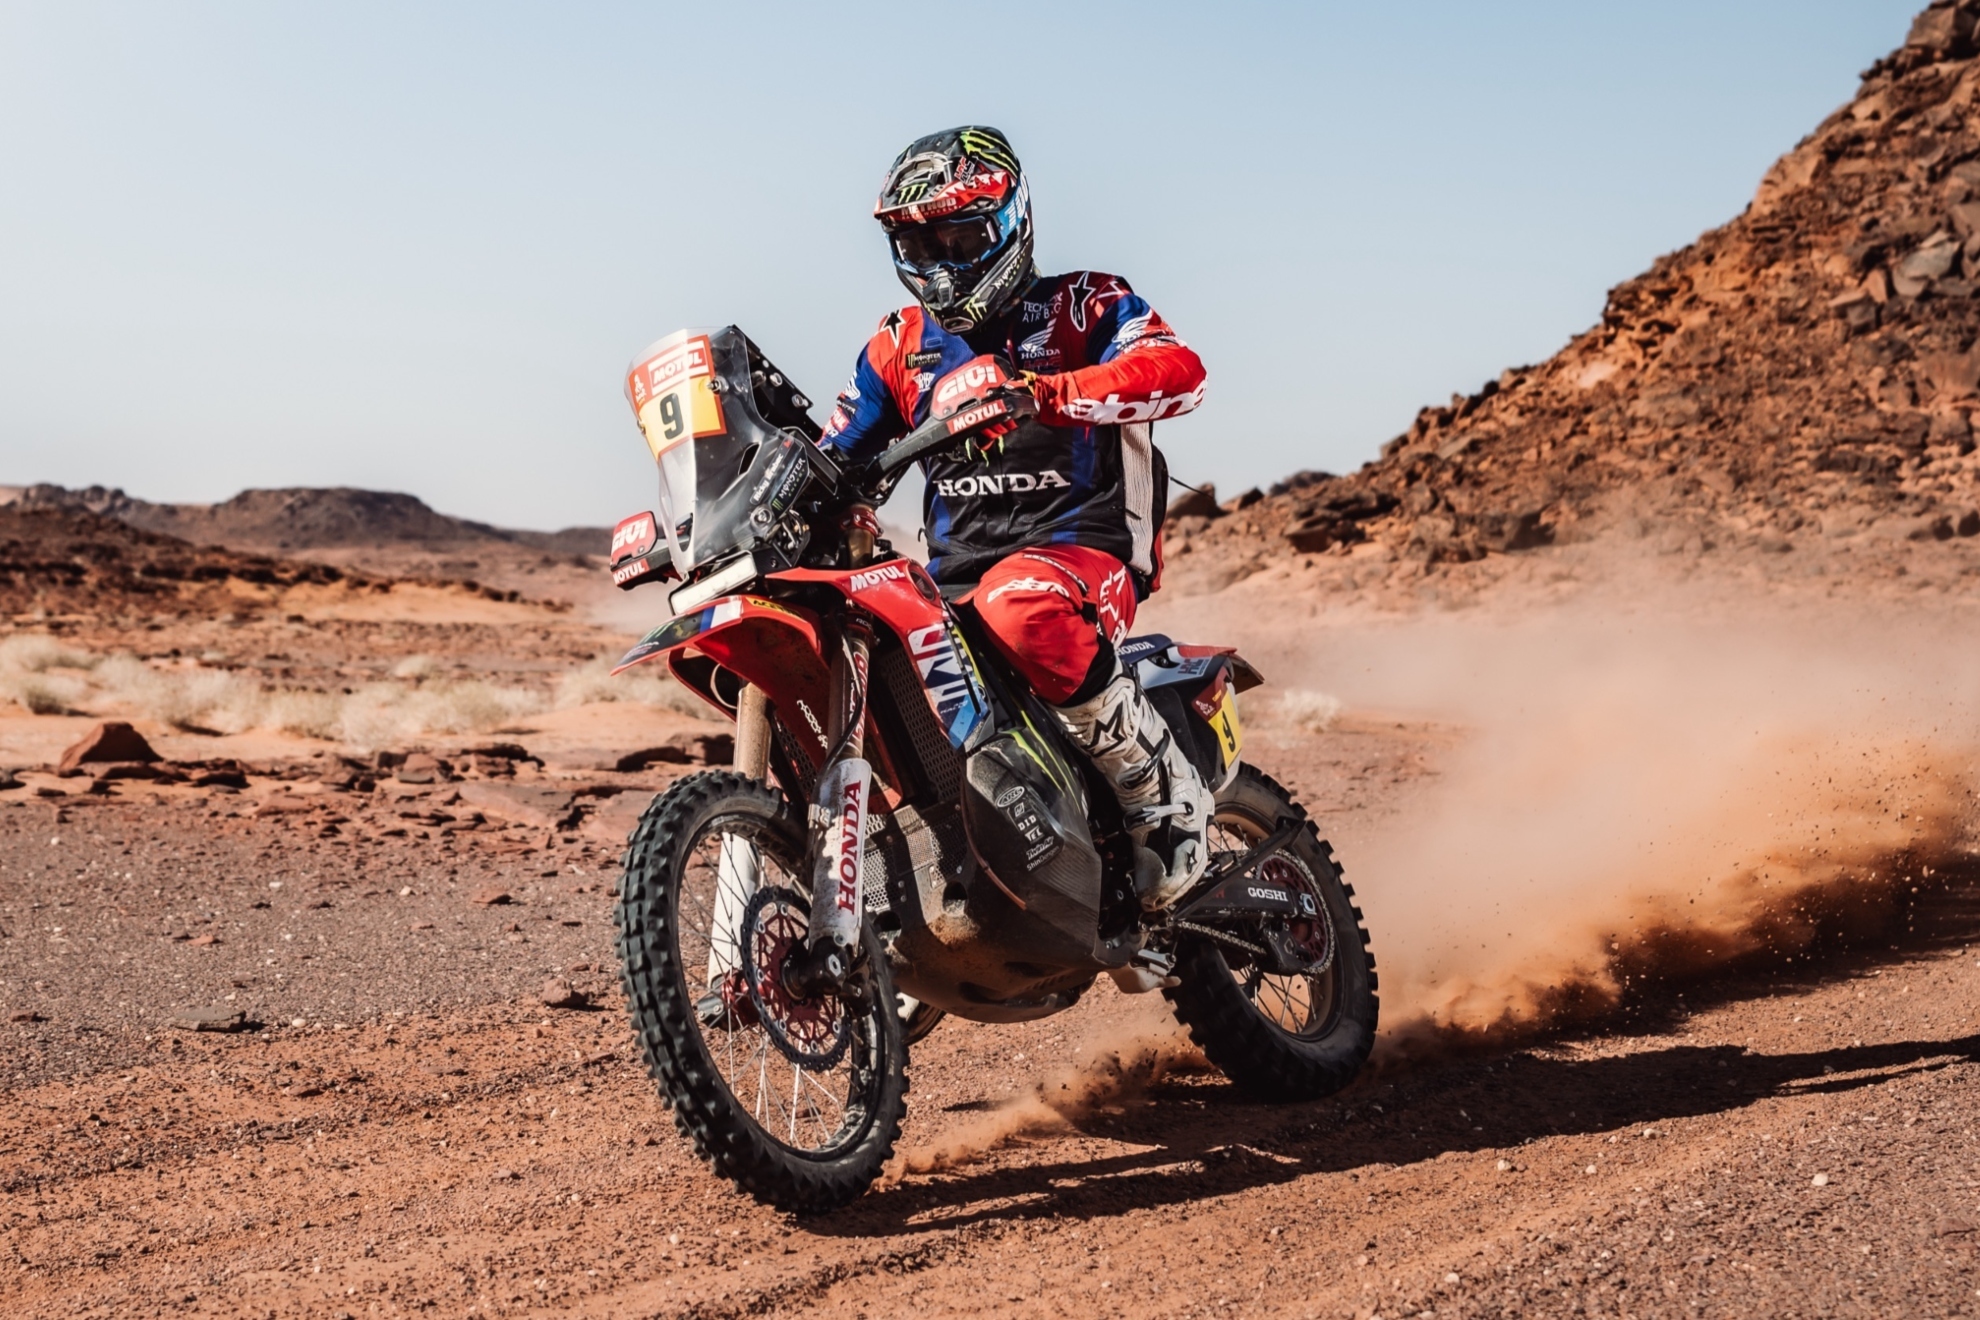 S�lo una desgracia puede apartar a Brabec de su segundo triunfo en el Dakar.